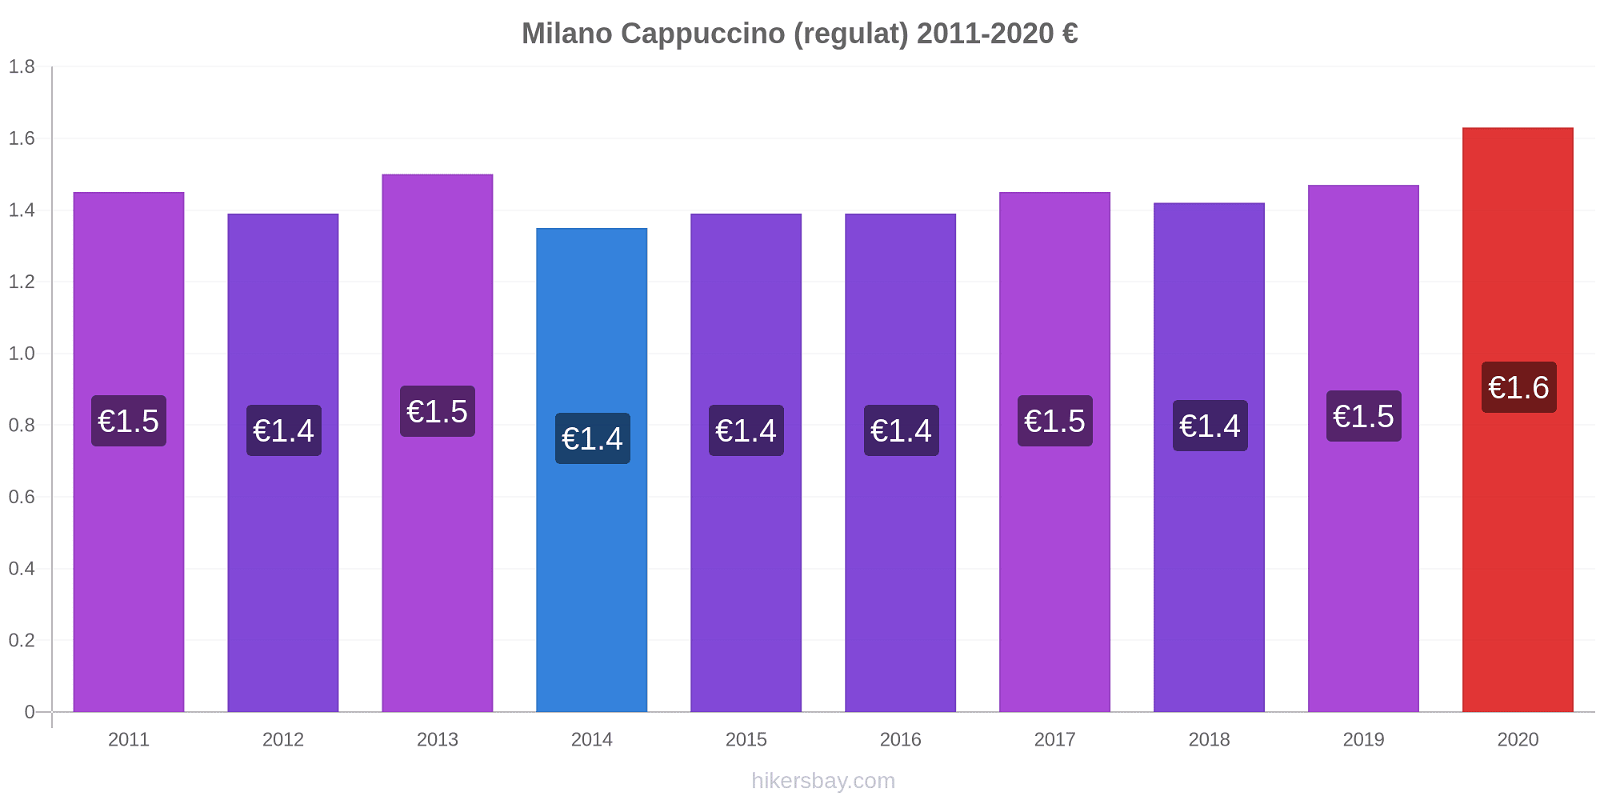 Milano modificări de preț Cappuccino (regulat) hikersbay.com